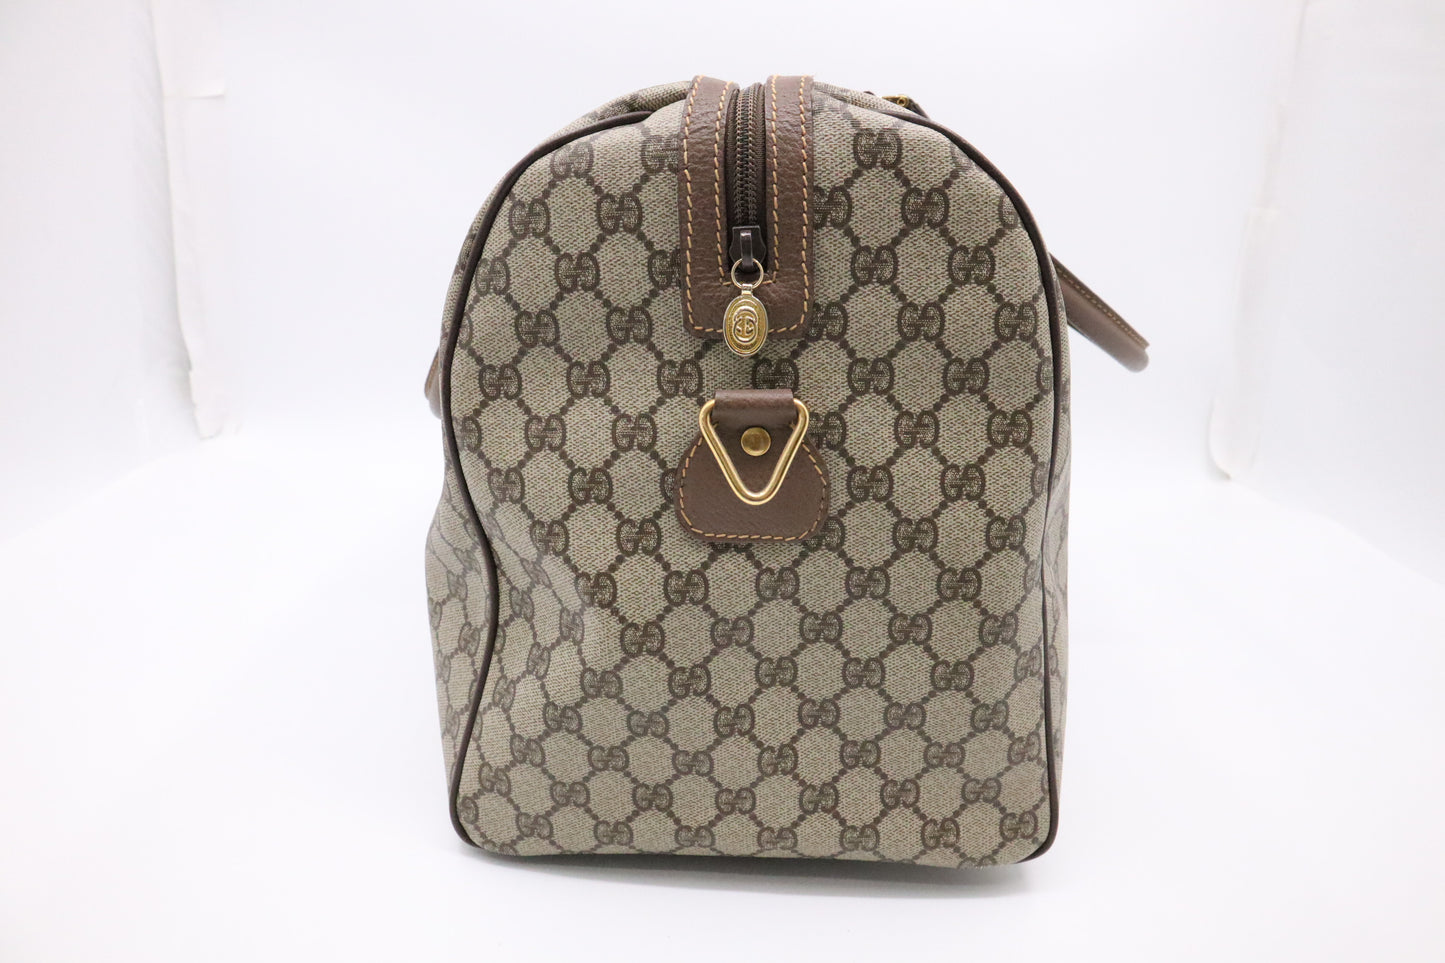 Gucci Travel Bag in GG Supreme Canvas